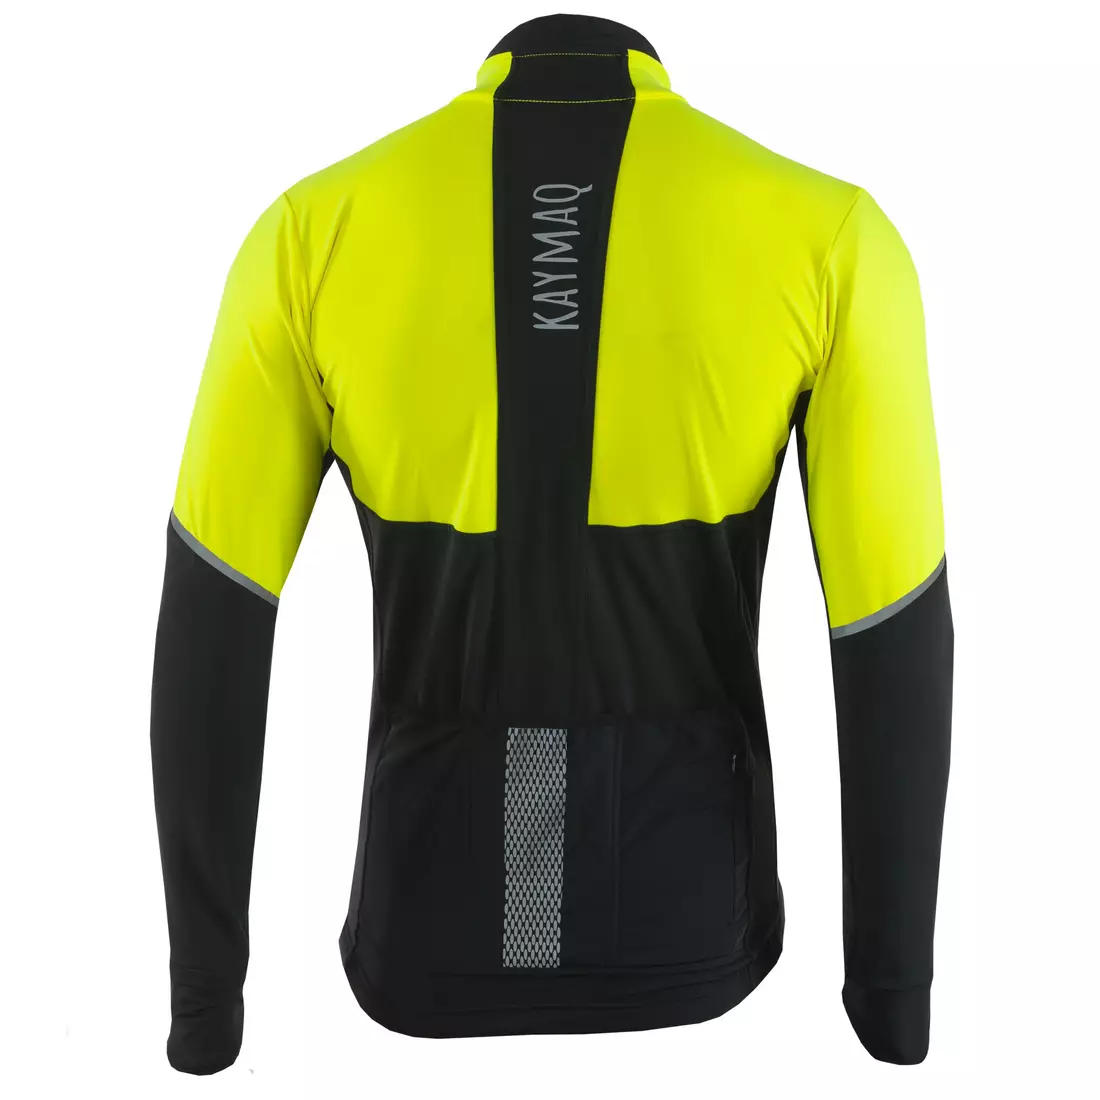 KAYMAQ KYQLS-001 férfi kerékpáros pulóver fluo sárga-fekete